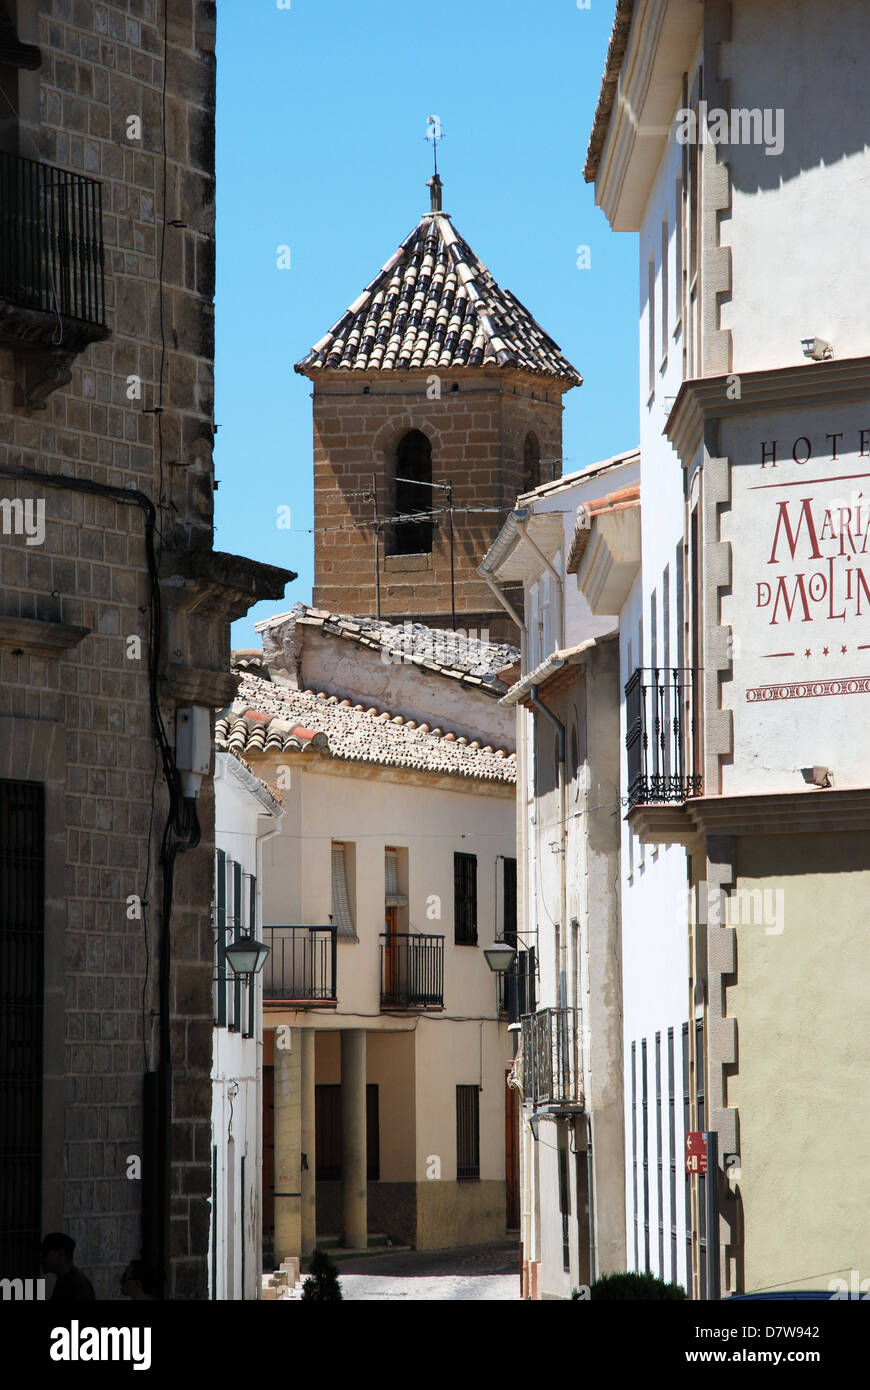 Tipica città vecchia strada stretta con il campanile della chiesa verso la parte posteriore, a Ubeda, Provincia di Jaen, Andalusia, Spagna, Europa occidentale. Foto Stock